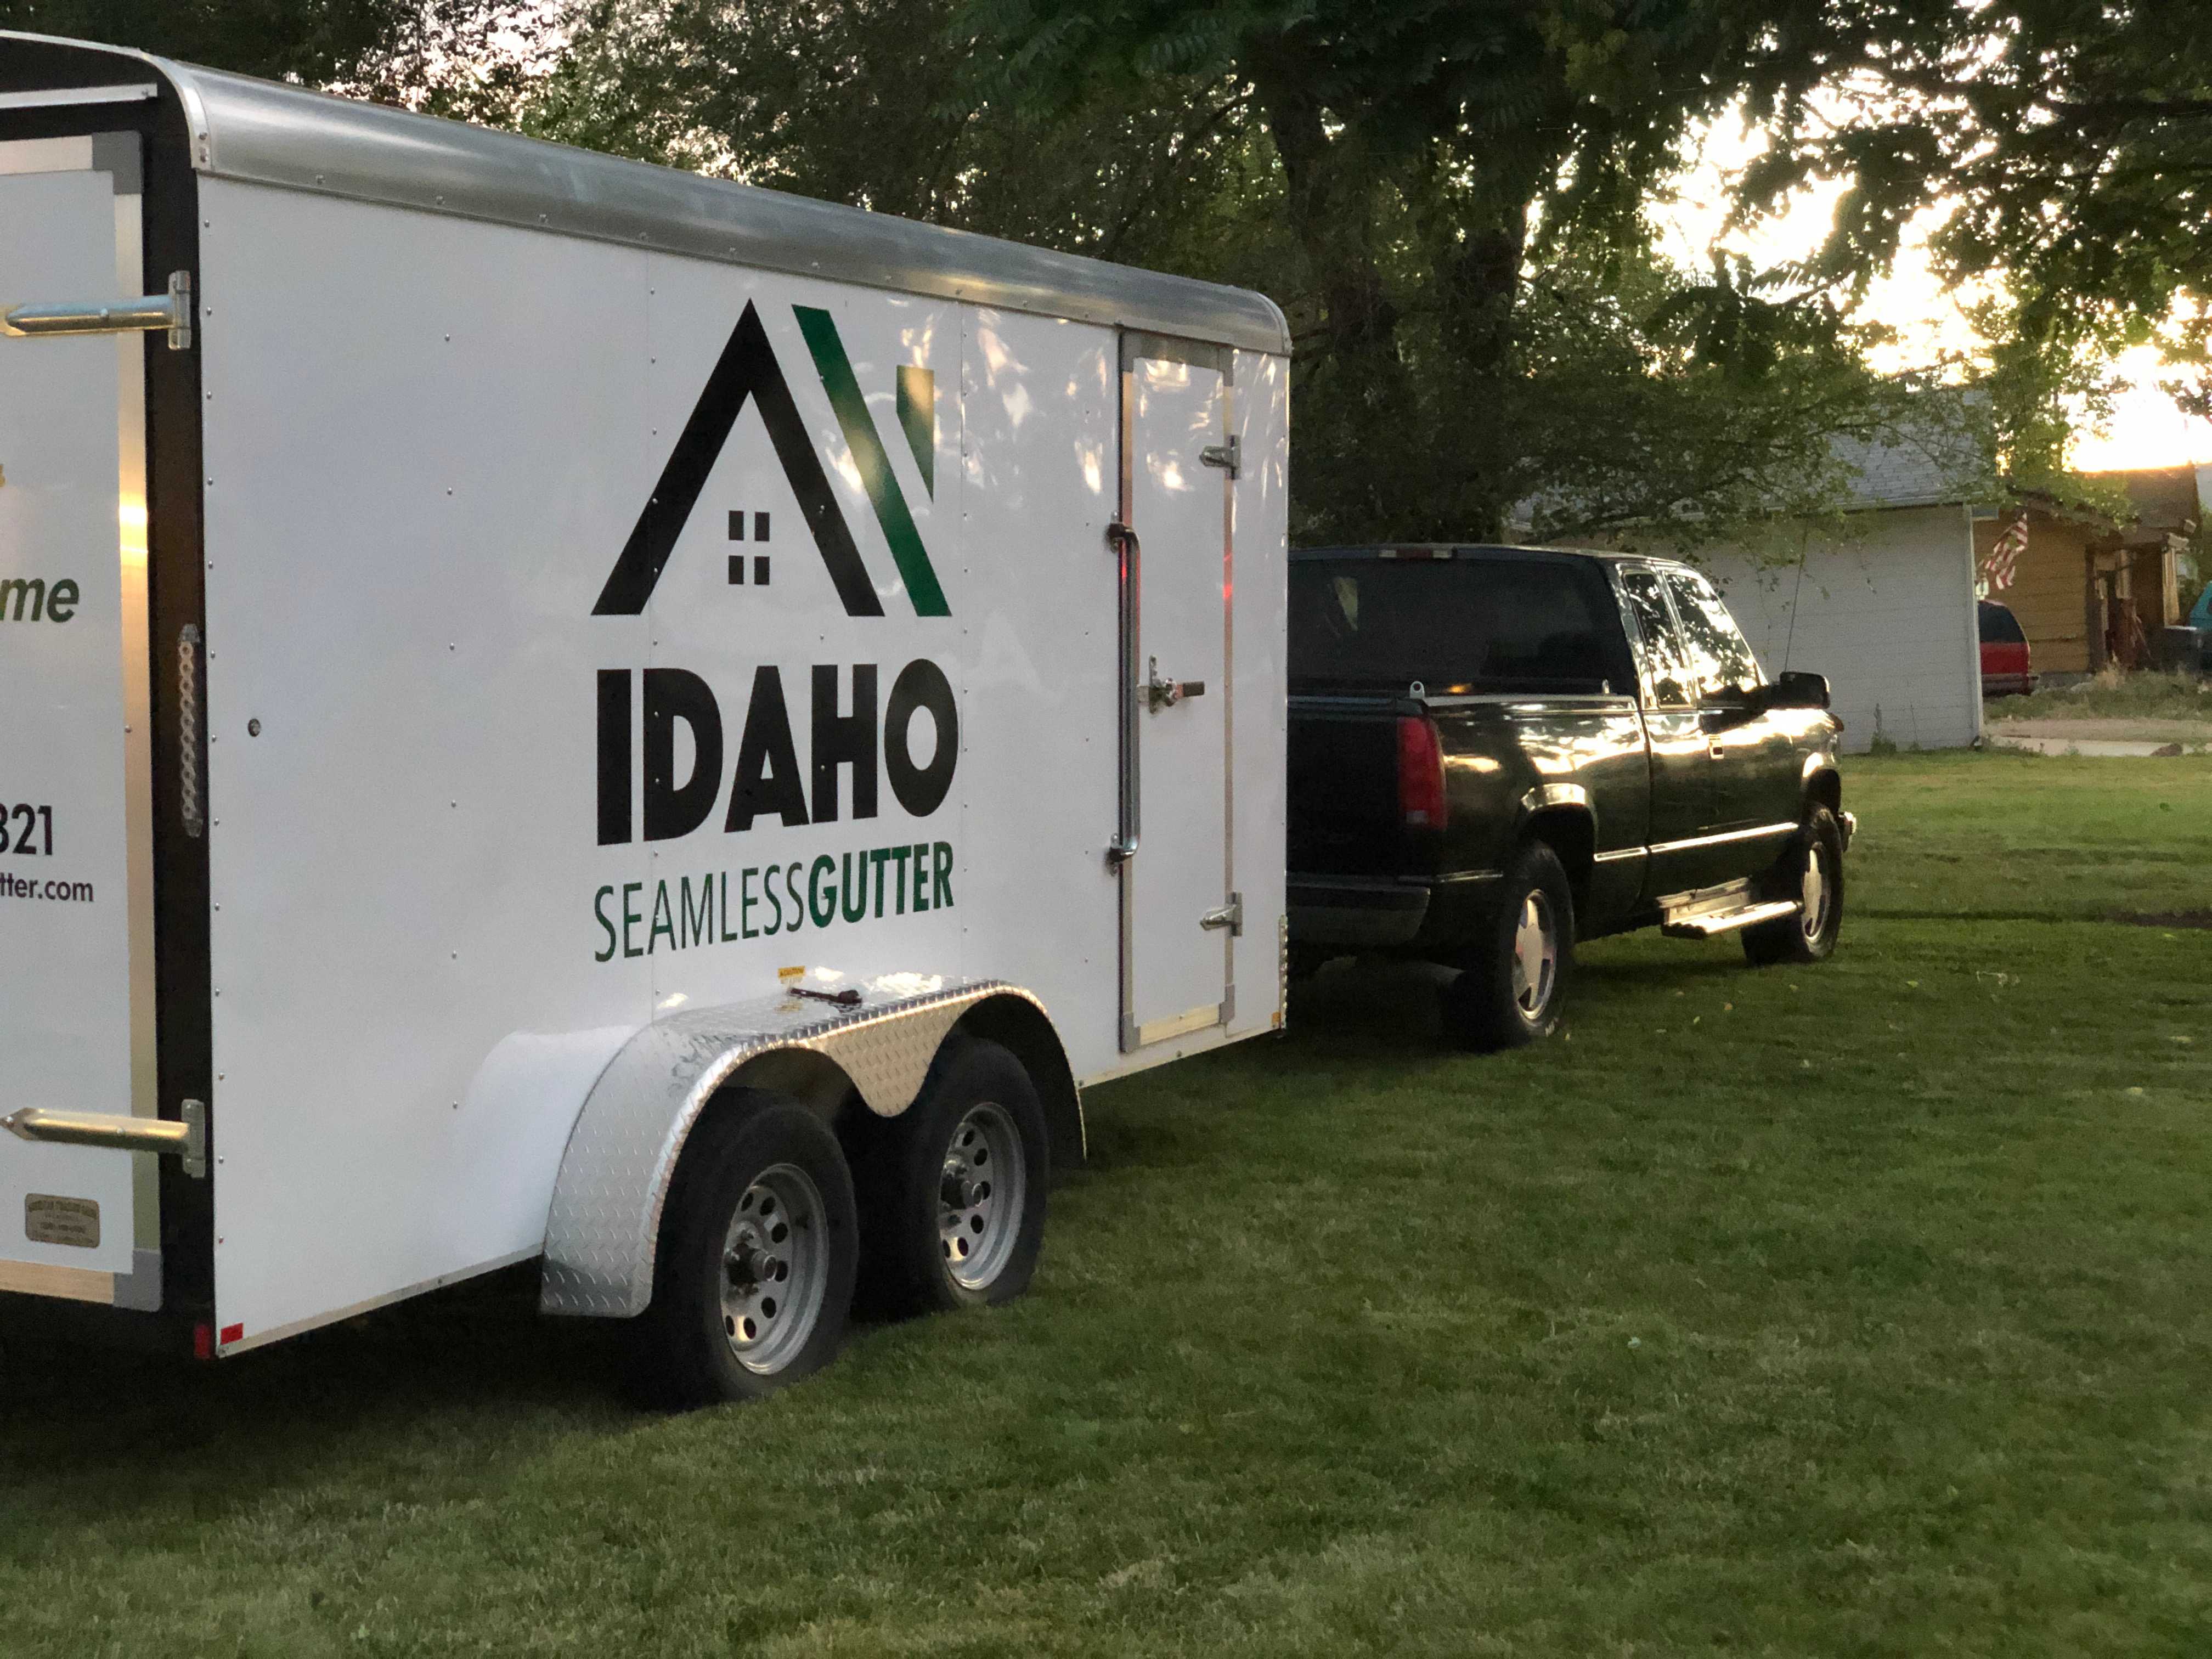 Truck with Idaho Seamless Gutter trailer.